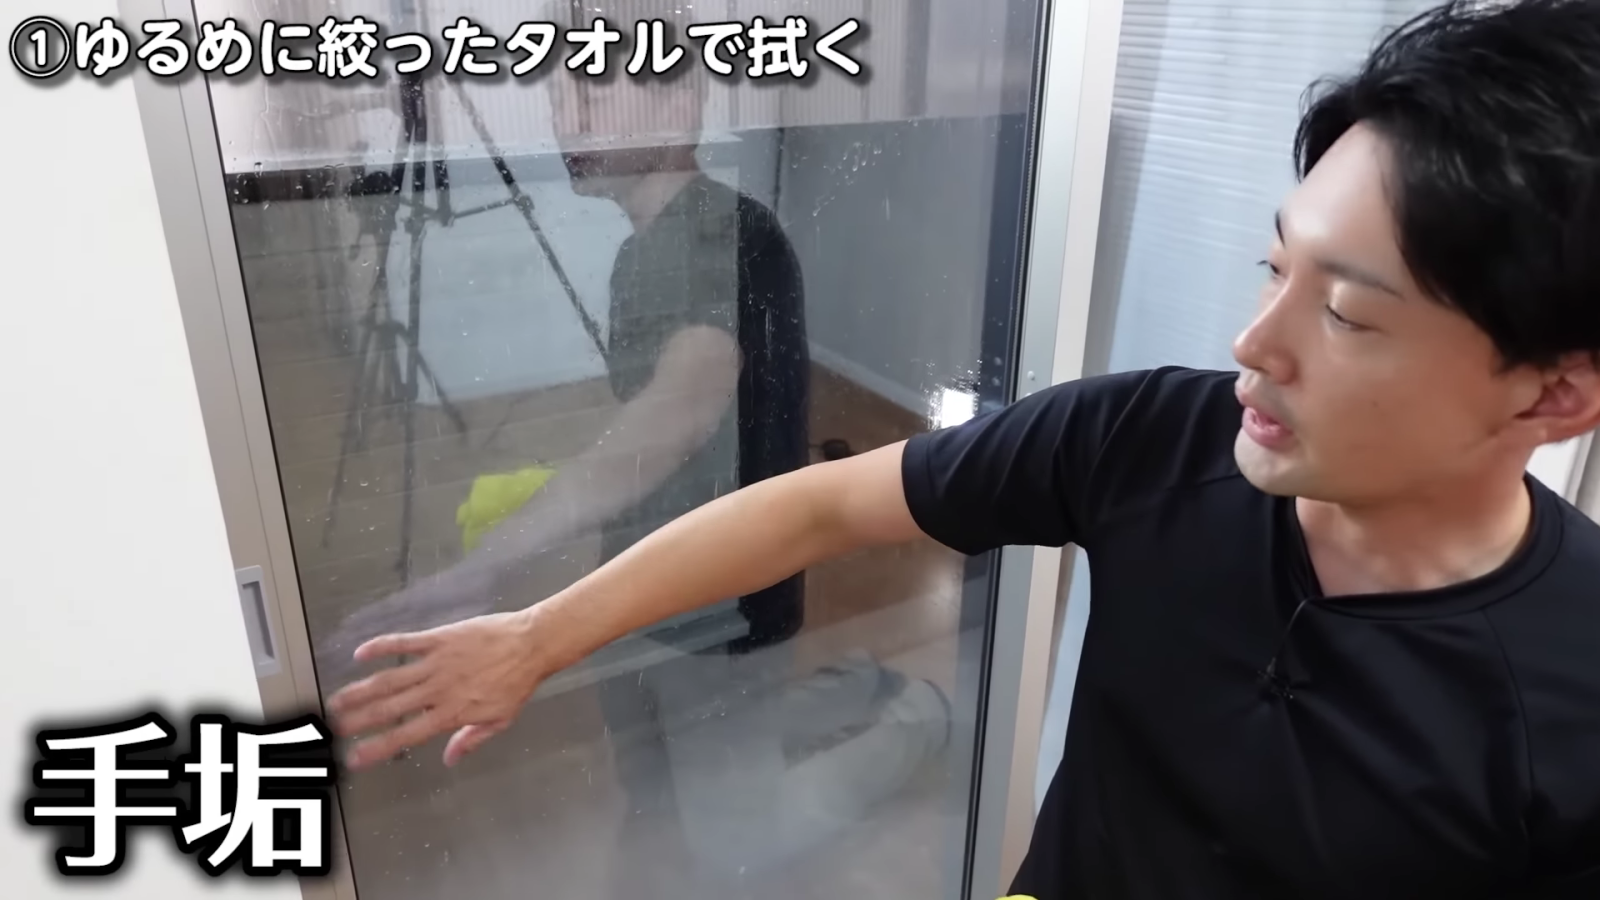 窓掃除をする男性